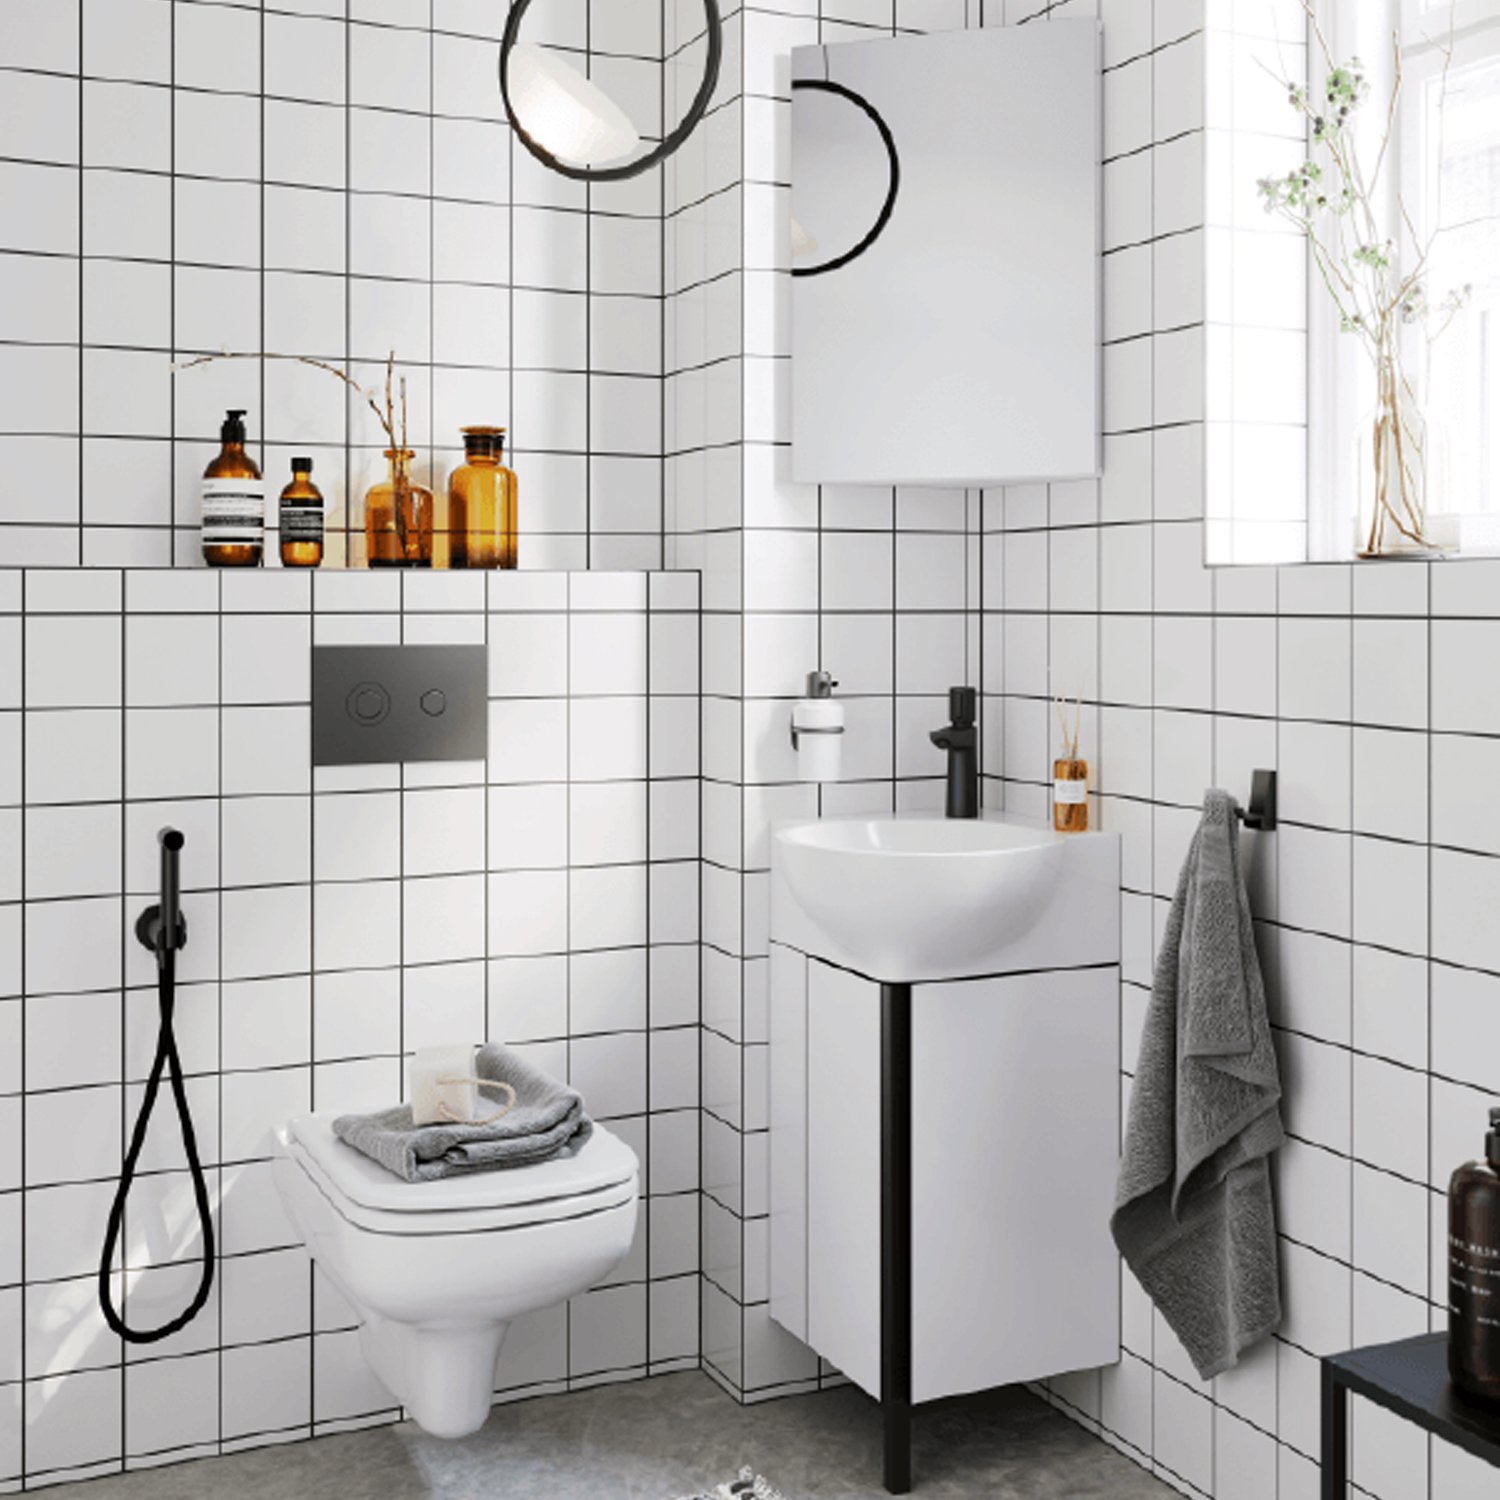 Мебель для ванной  Aqwella Porto 45, угловая, цвет белый / черный